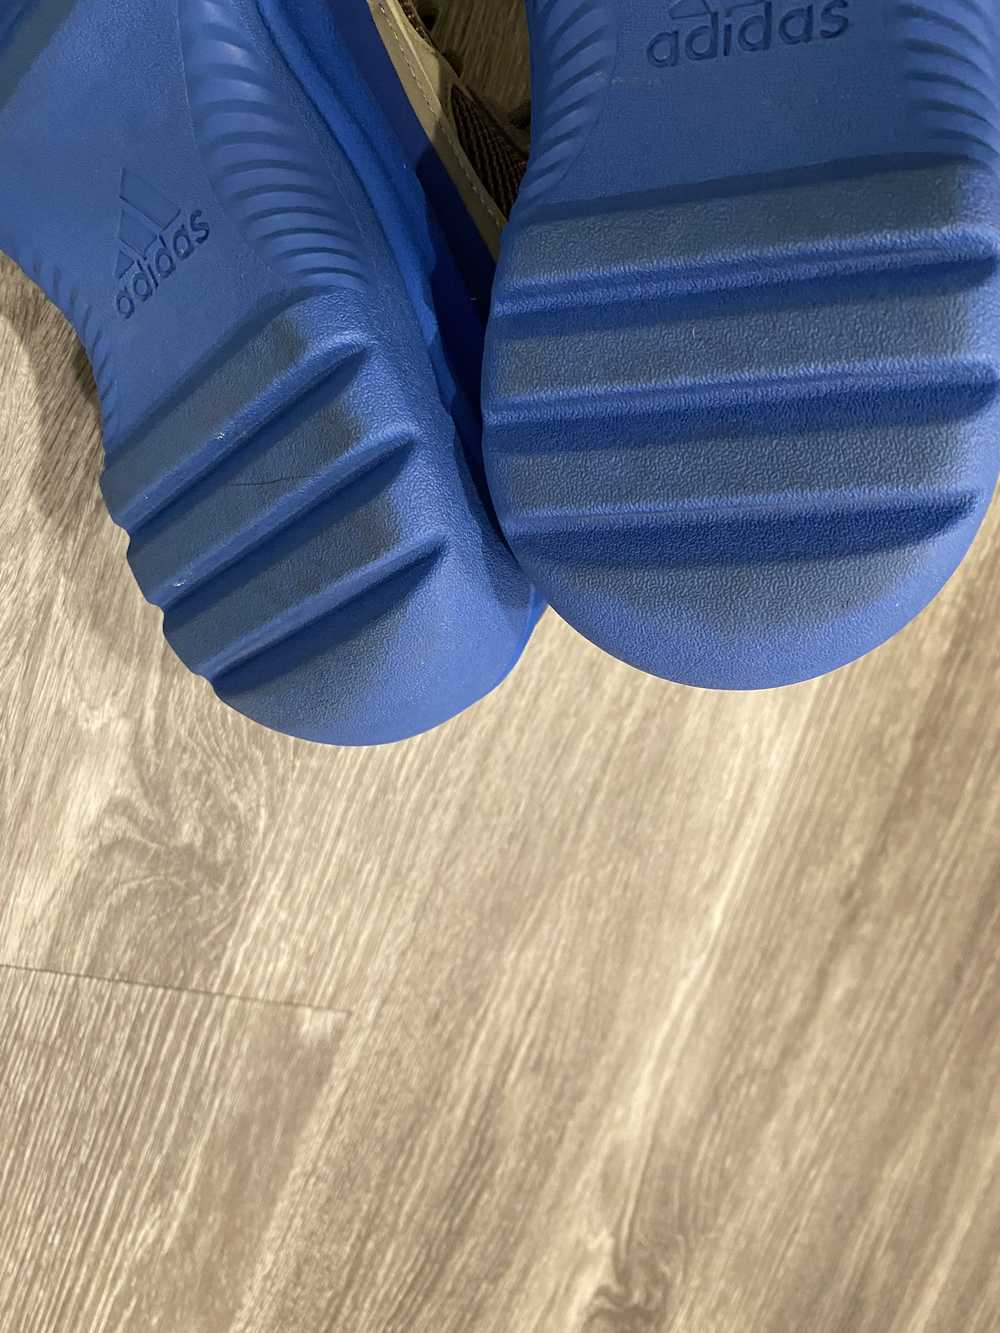 Adidas × Kanye West Yeezy Desert Boot - image 9